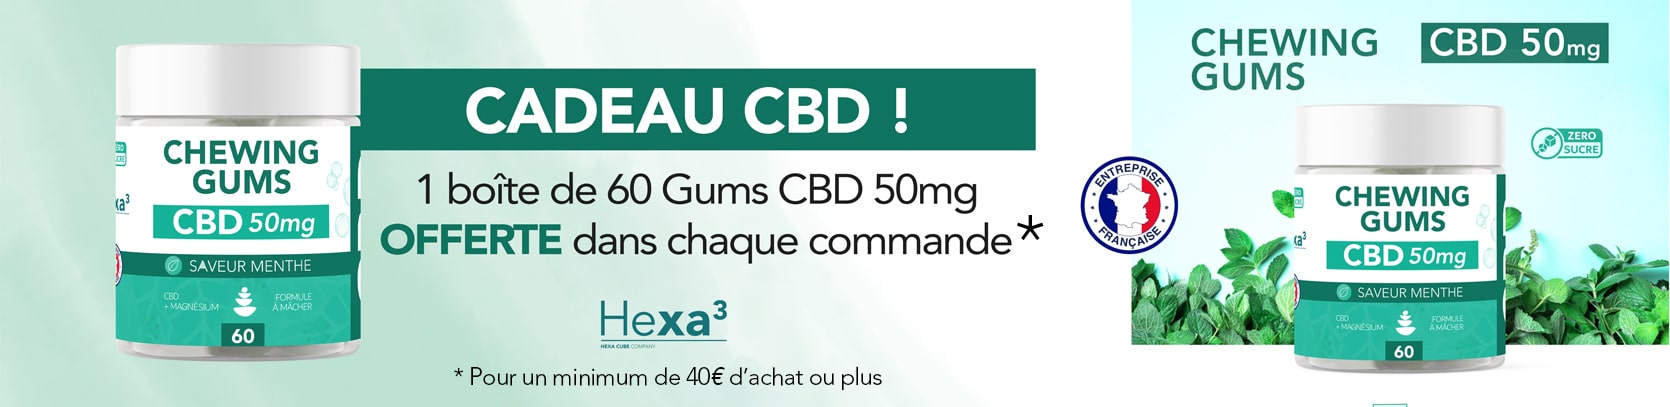 promotion cbd chewing-gums CBD offerts dans chaque commande